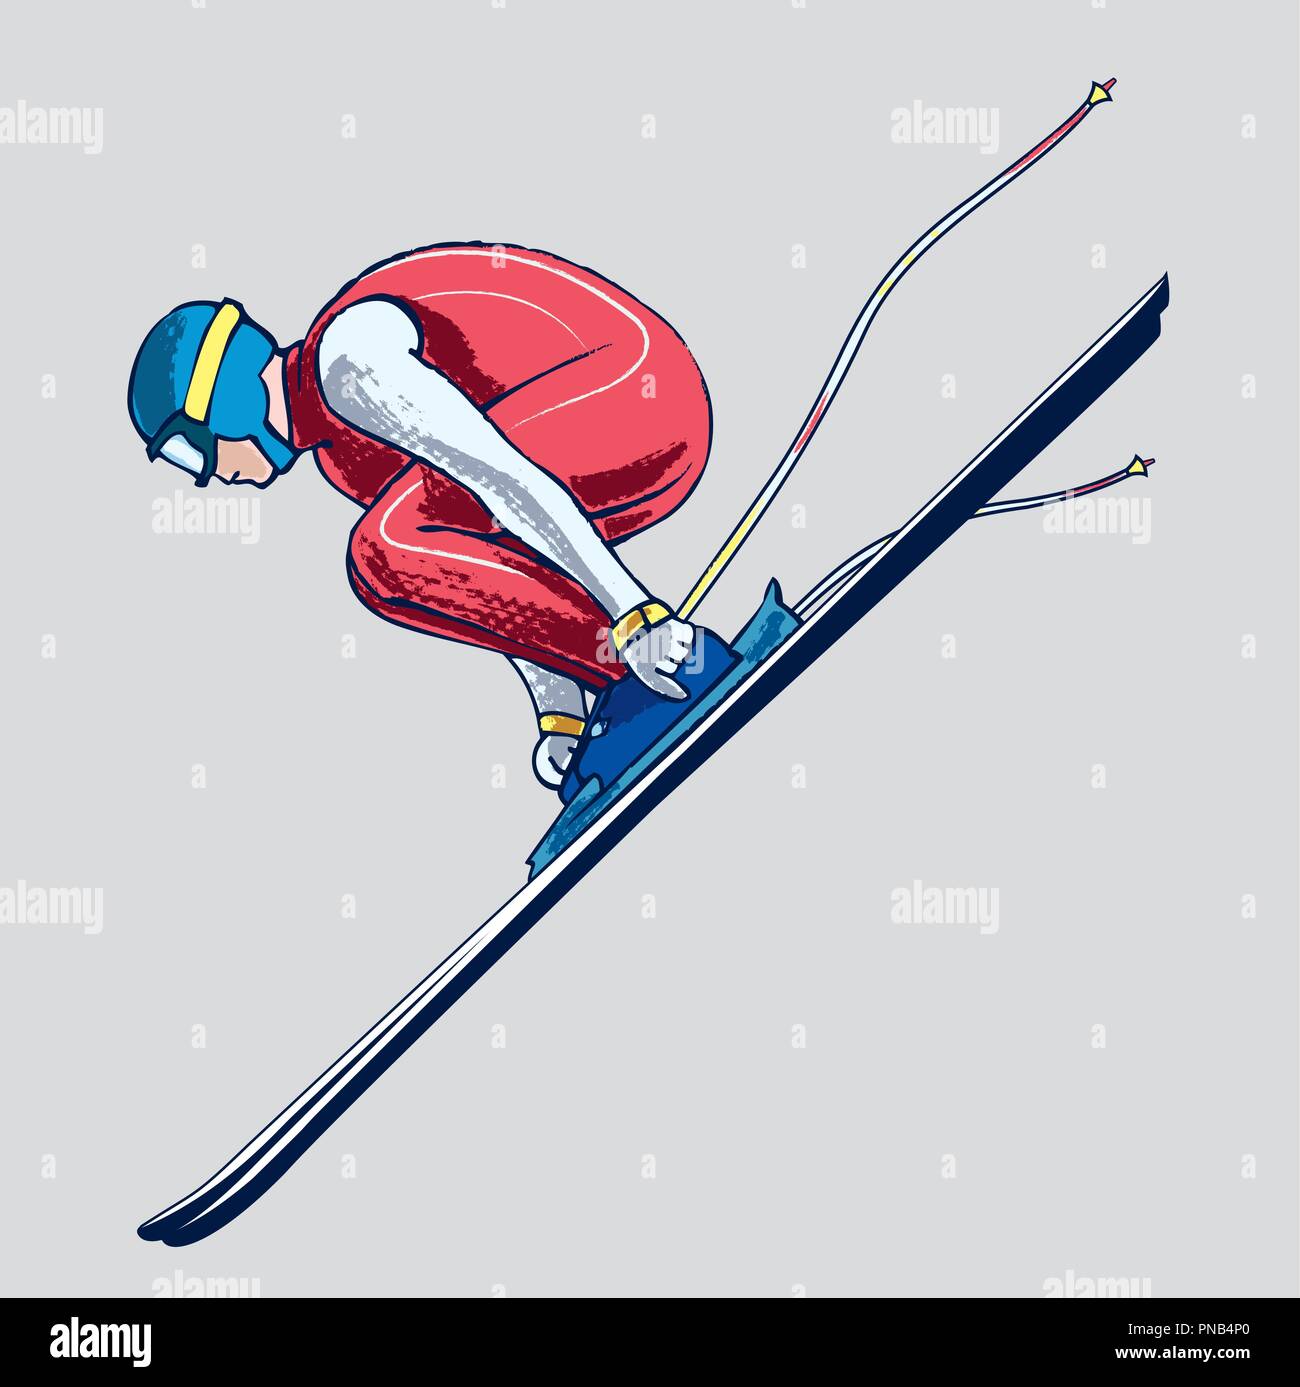 L'athlète de ski jumping, dessin à la main Illustration de Vecteur